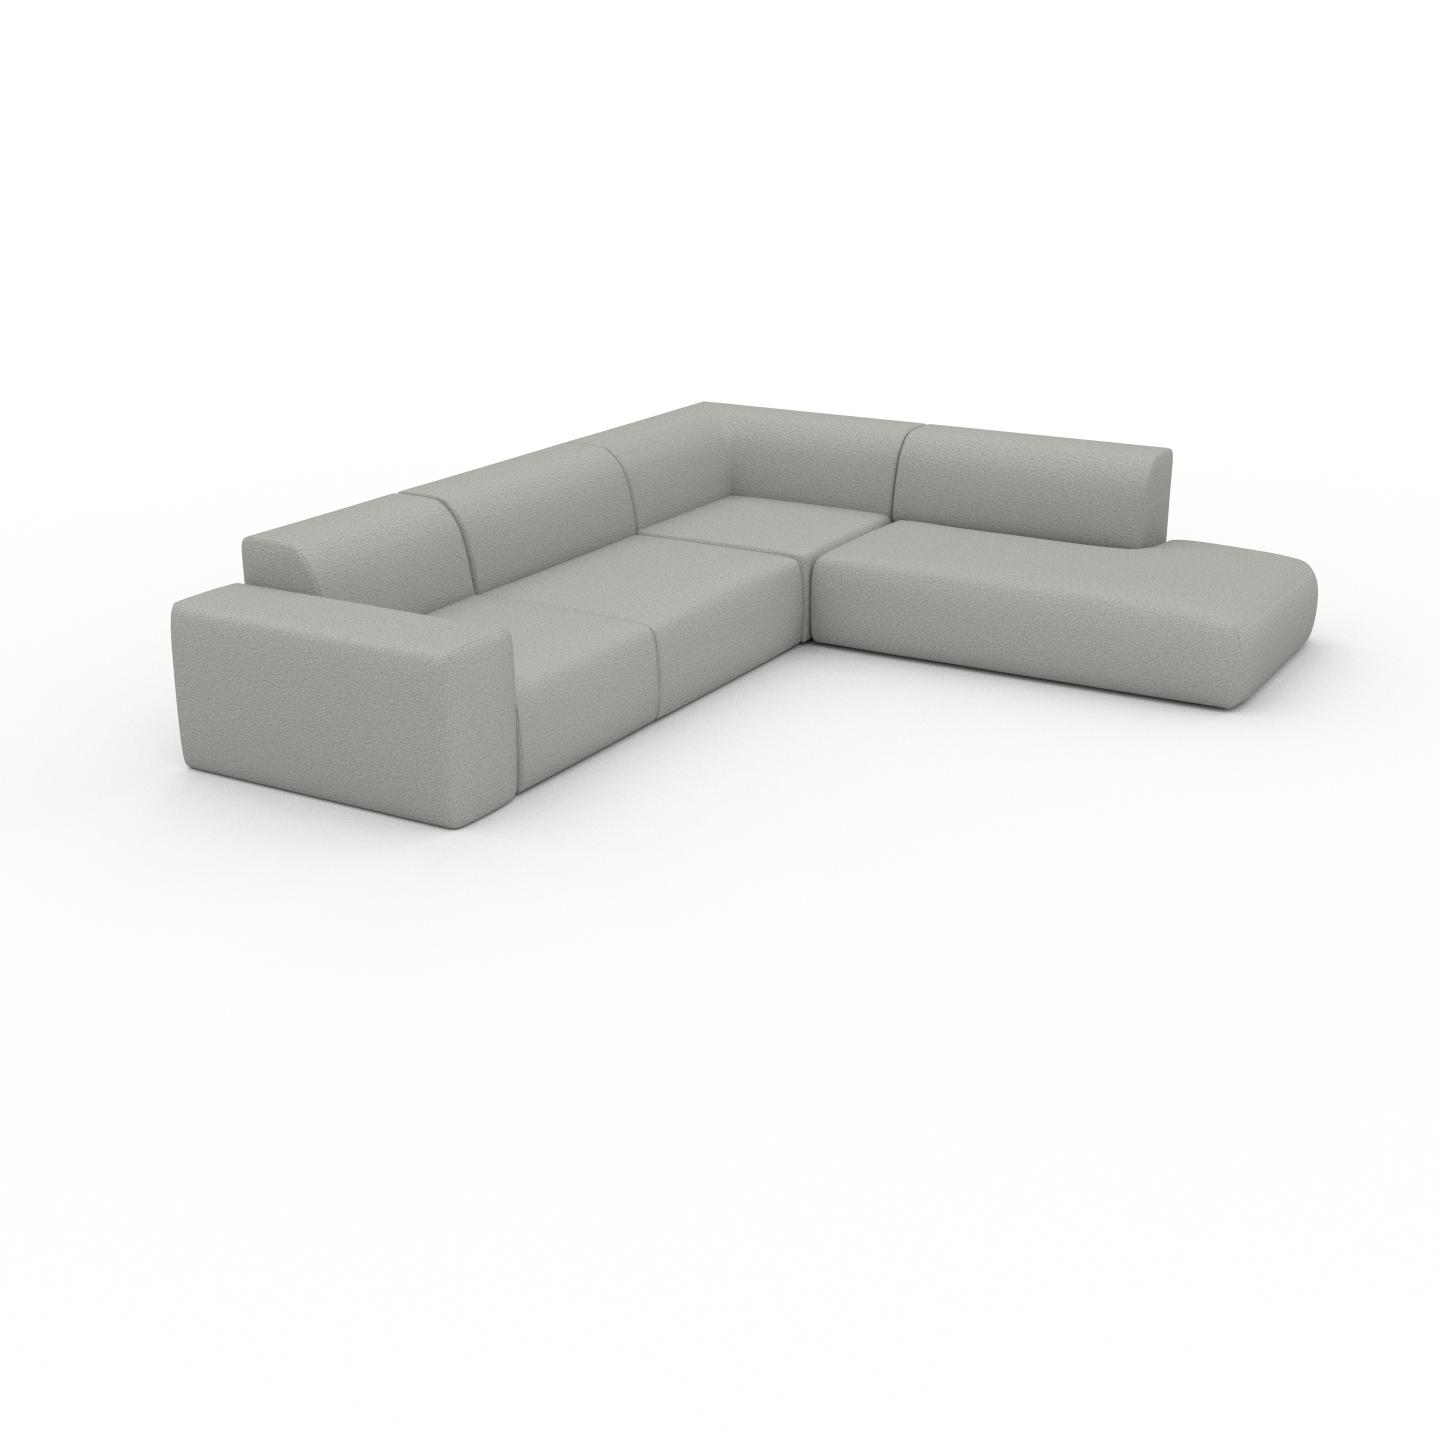 MYCS Sofa Lichtgrau - Moderne Designer-Couch: Hochwertige Qualität, einzigartiges Design - 267 x 72 x 314 cm, Komplett anpassbar